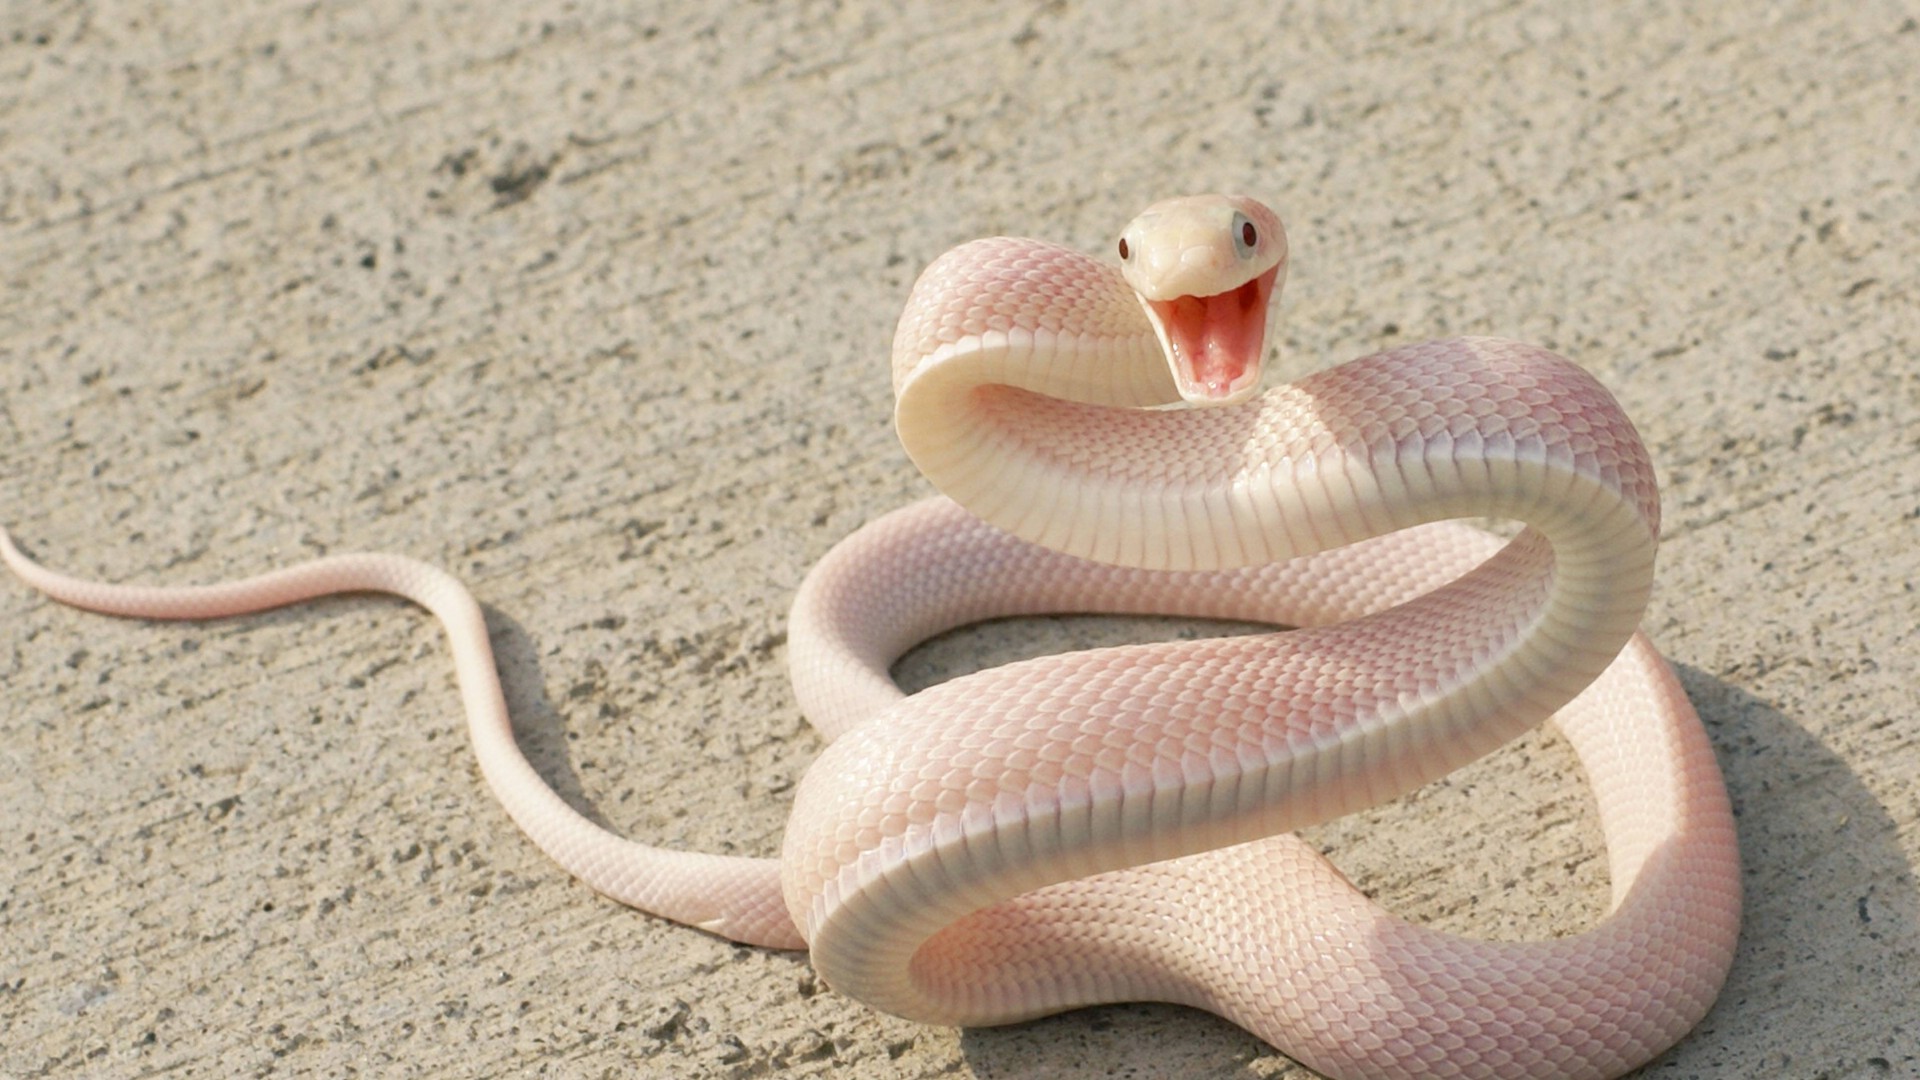 змея, розовая змея, асфальт, глаза, нападание, нападает, нападать, Snake, Pink Snake, asphalt, eyes, attack (horizontal)